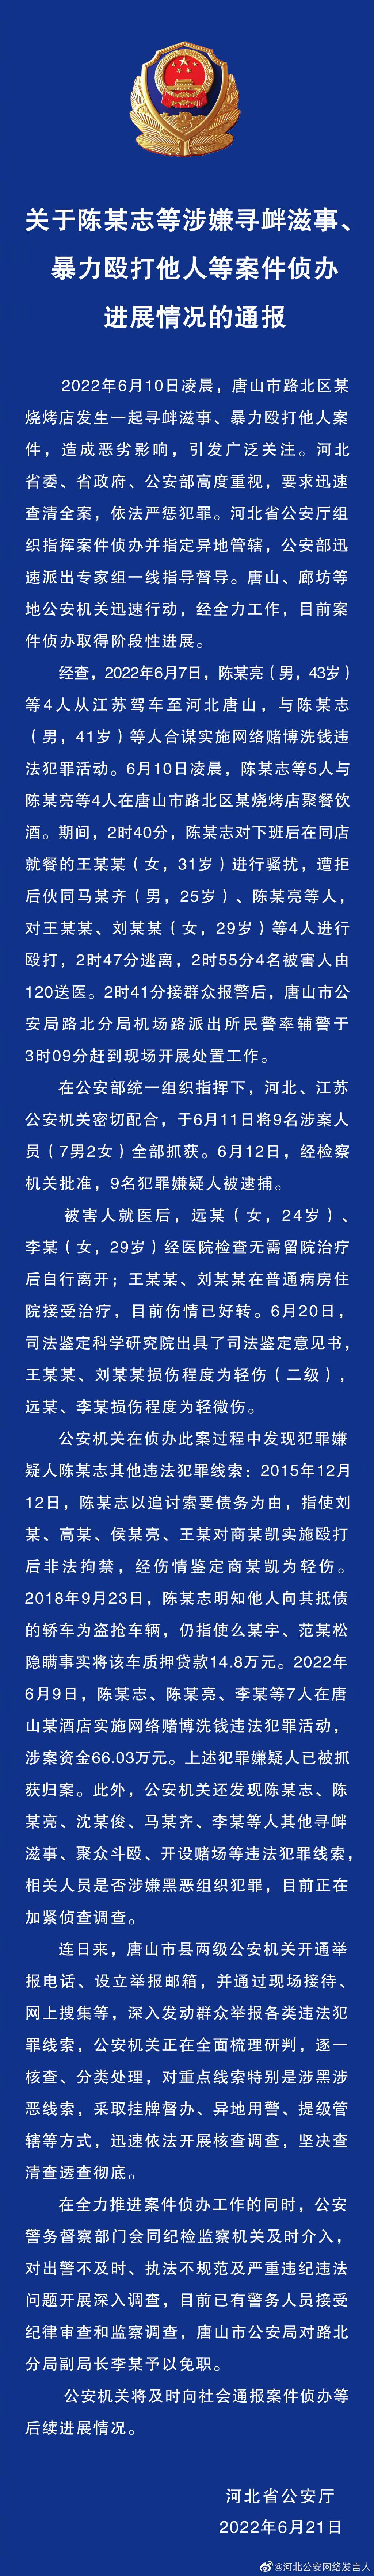 河北省公安厅发布关于陈某志等涉嫌寻衅滋事、暴力殴打他人等案件侦办进展情况的通报